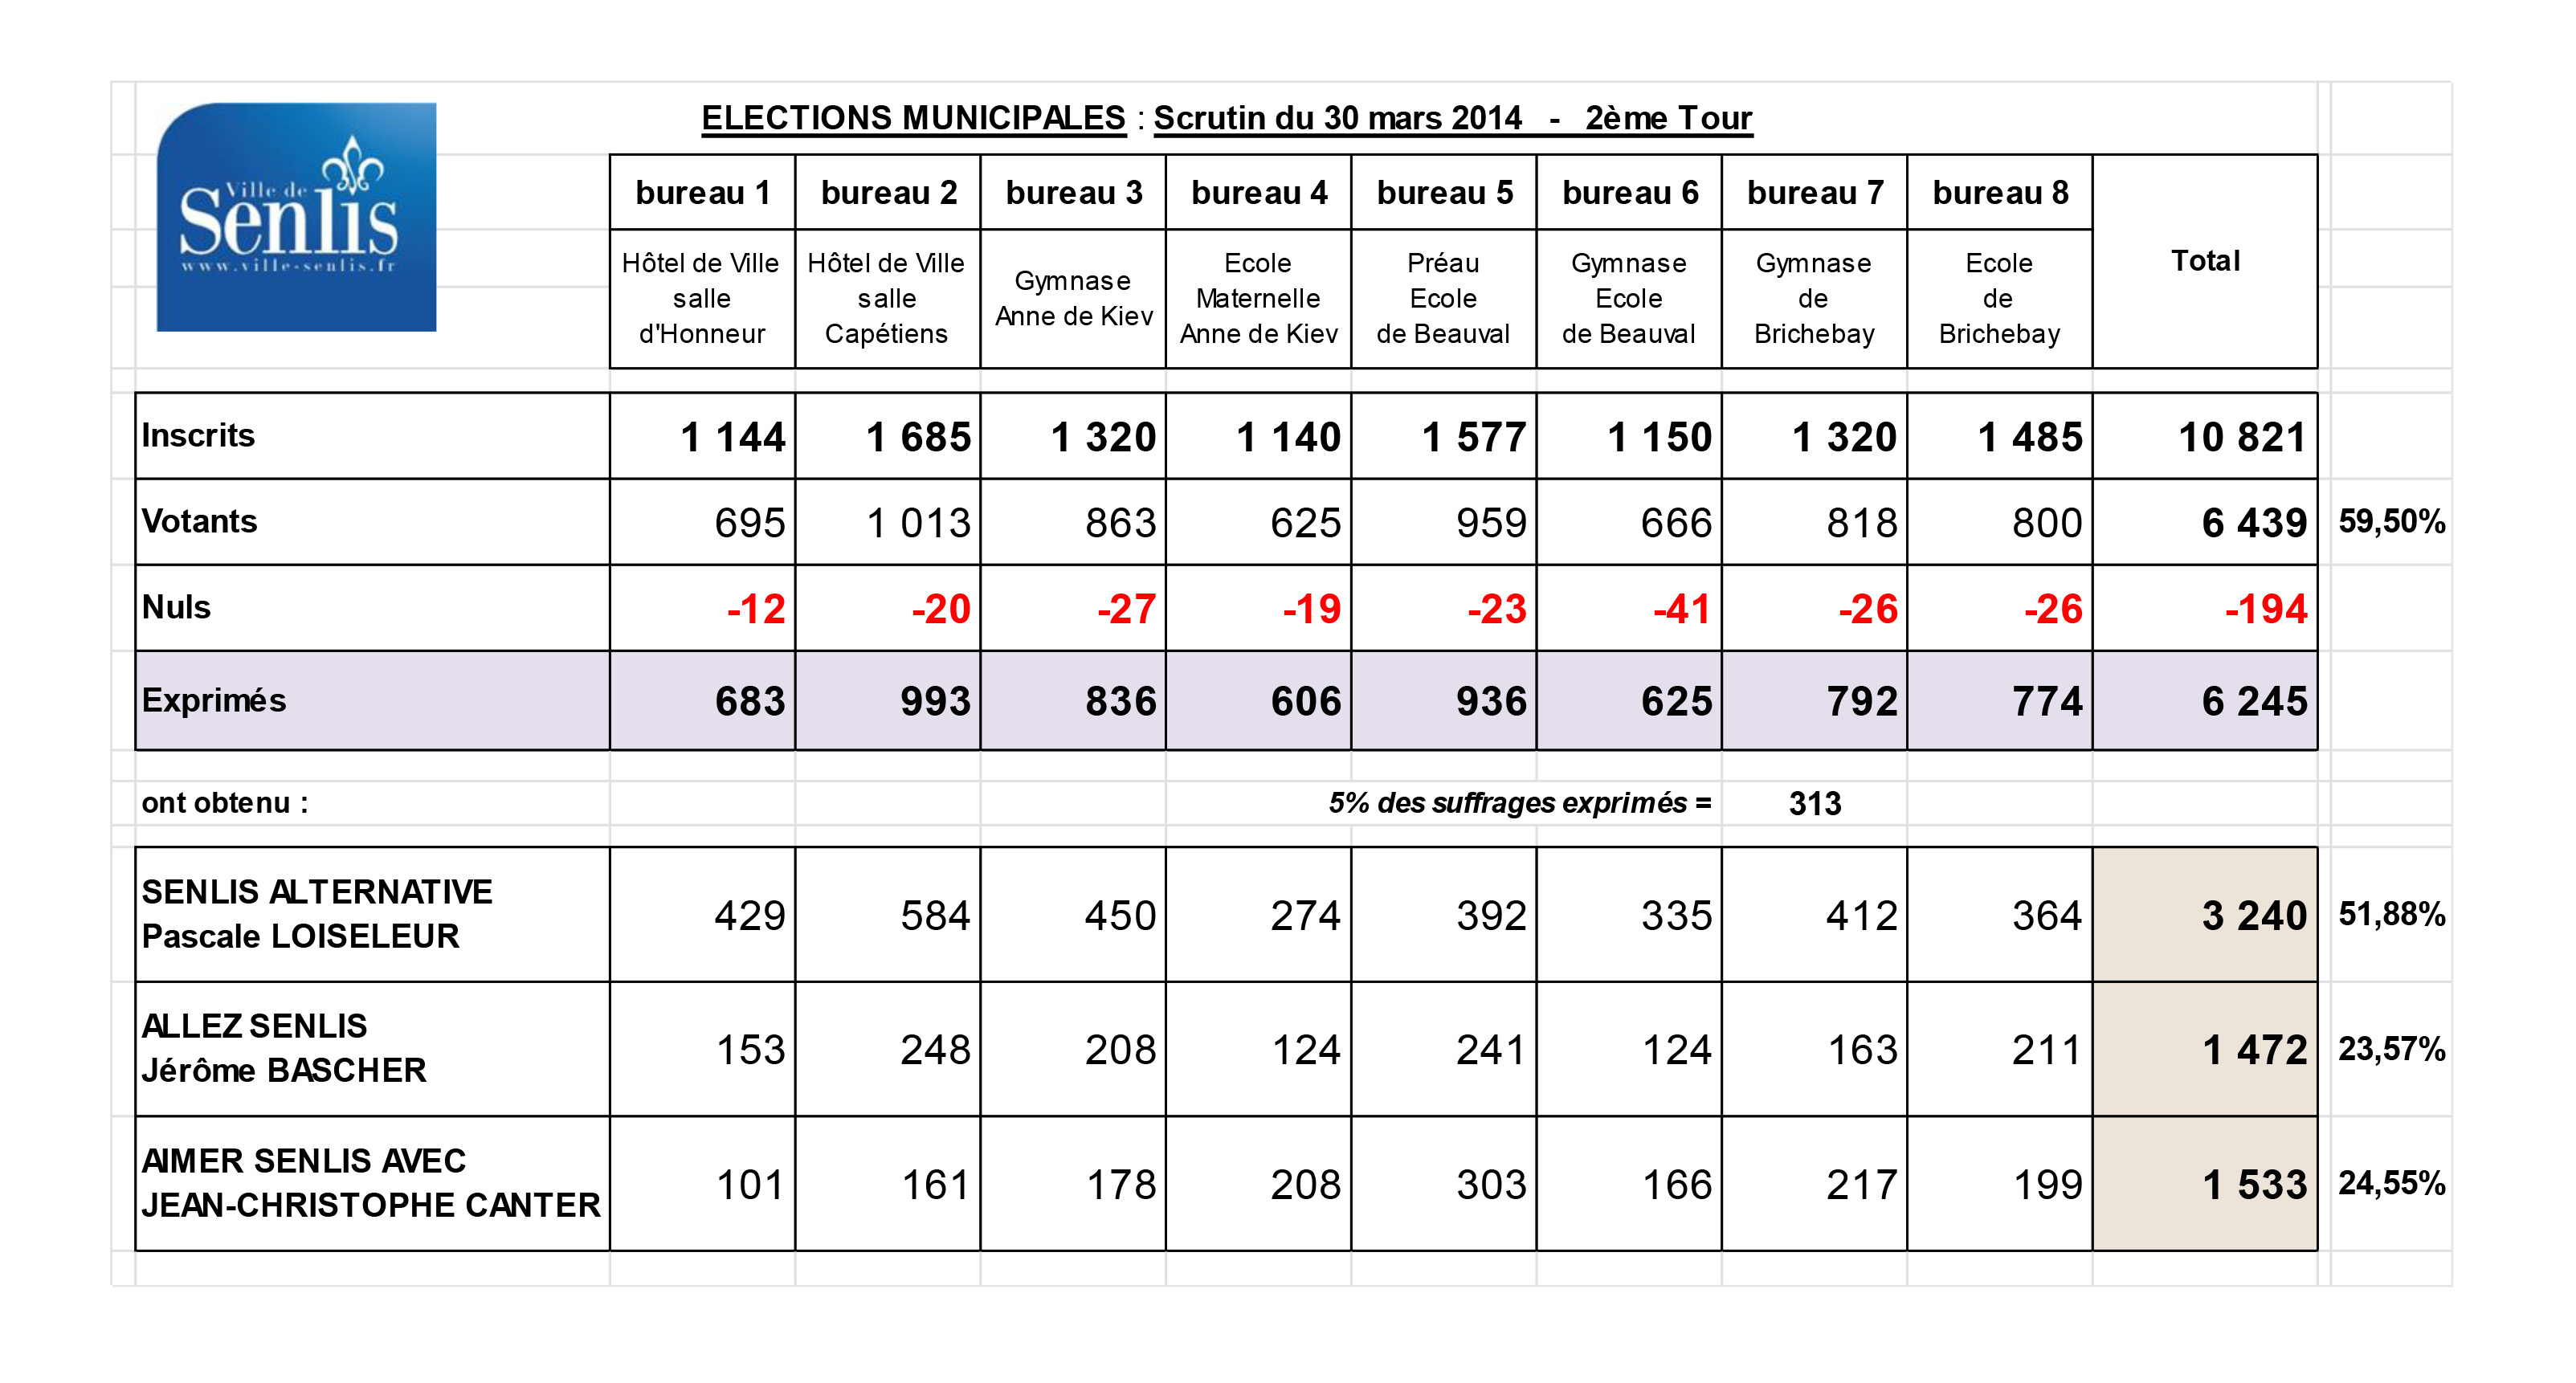 ELEC-Municipales 2014-Résultats-2ème tour